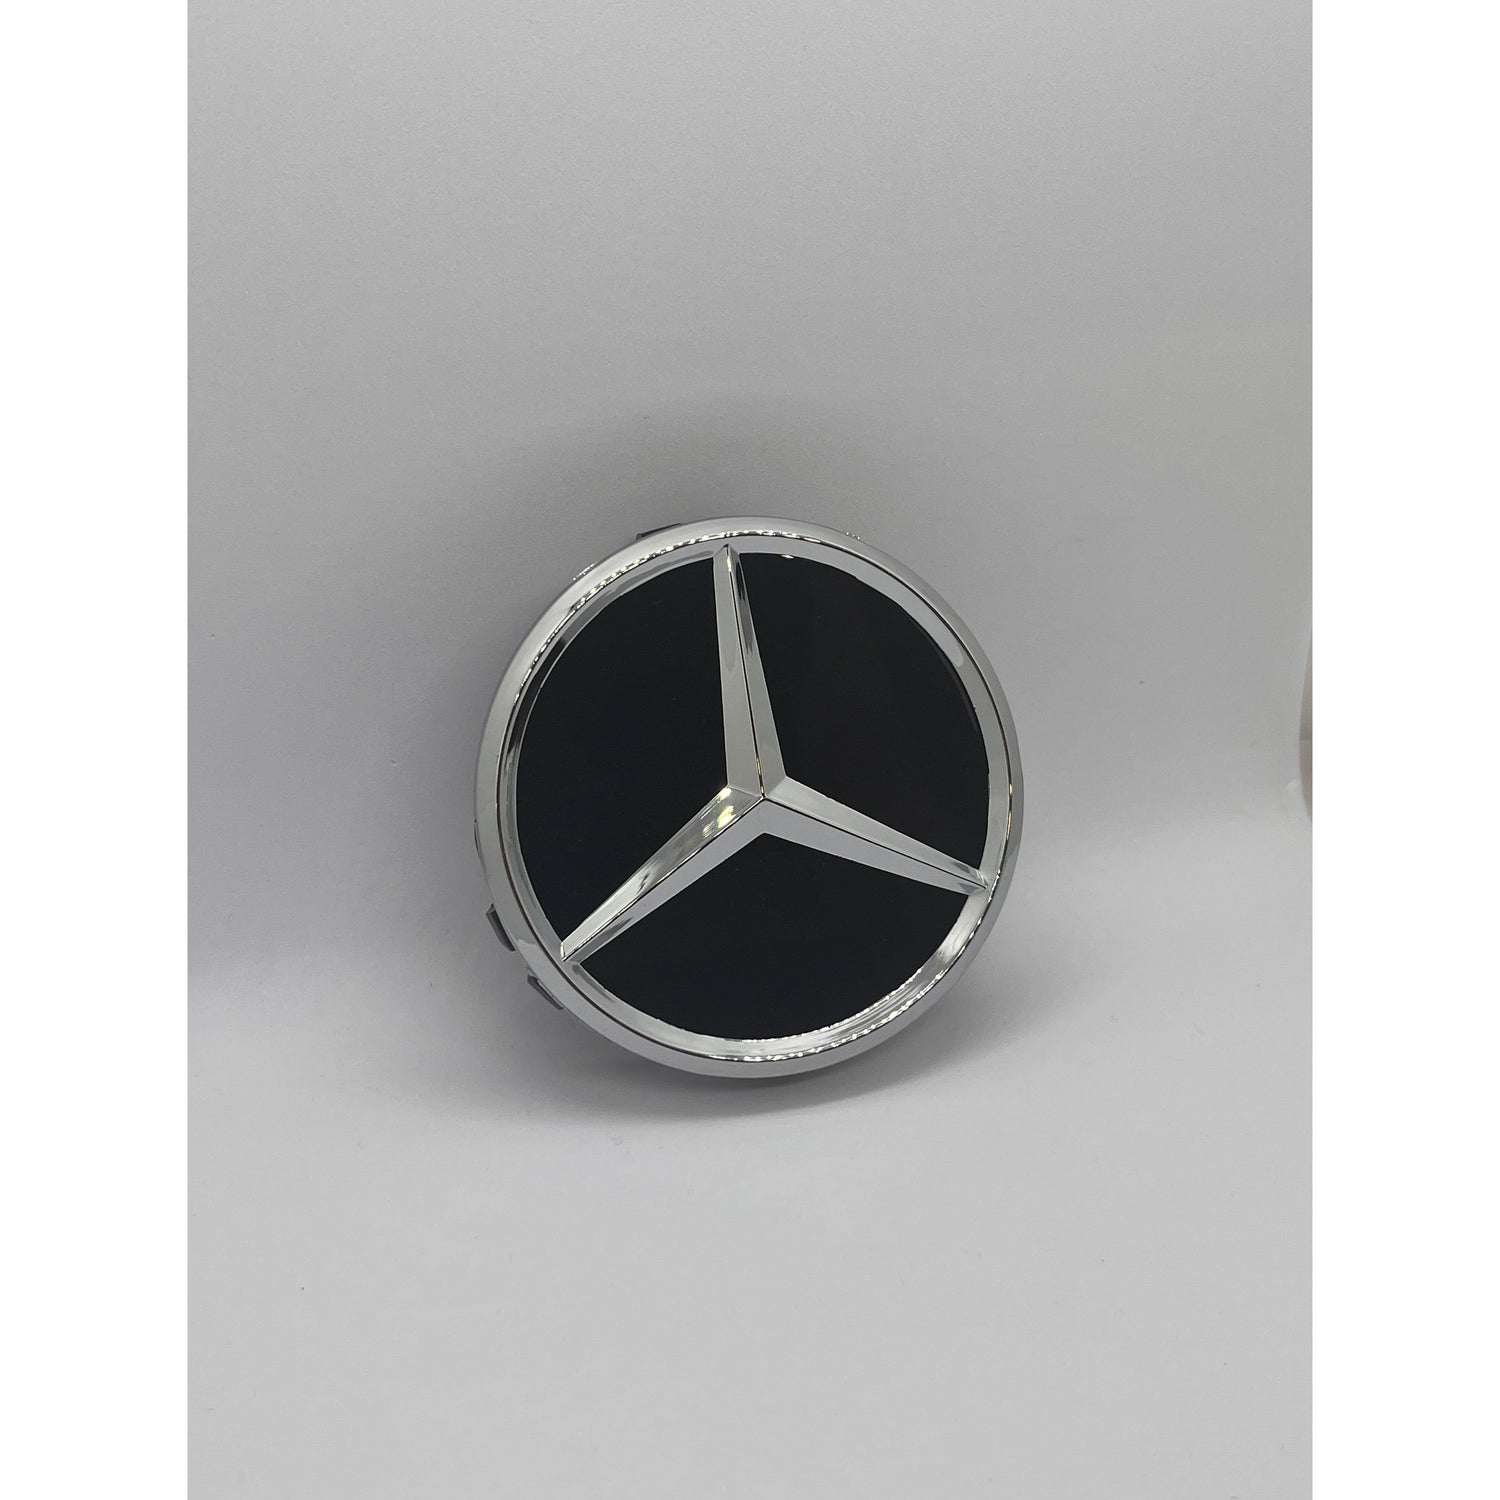 Mercedes centerkapsler, sæt med 4 stk - 75 mm, Sort - BilligStyling